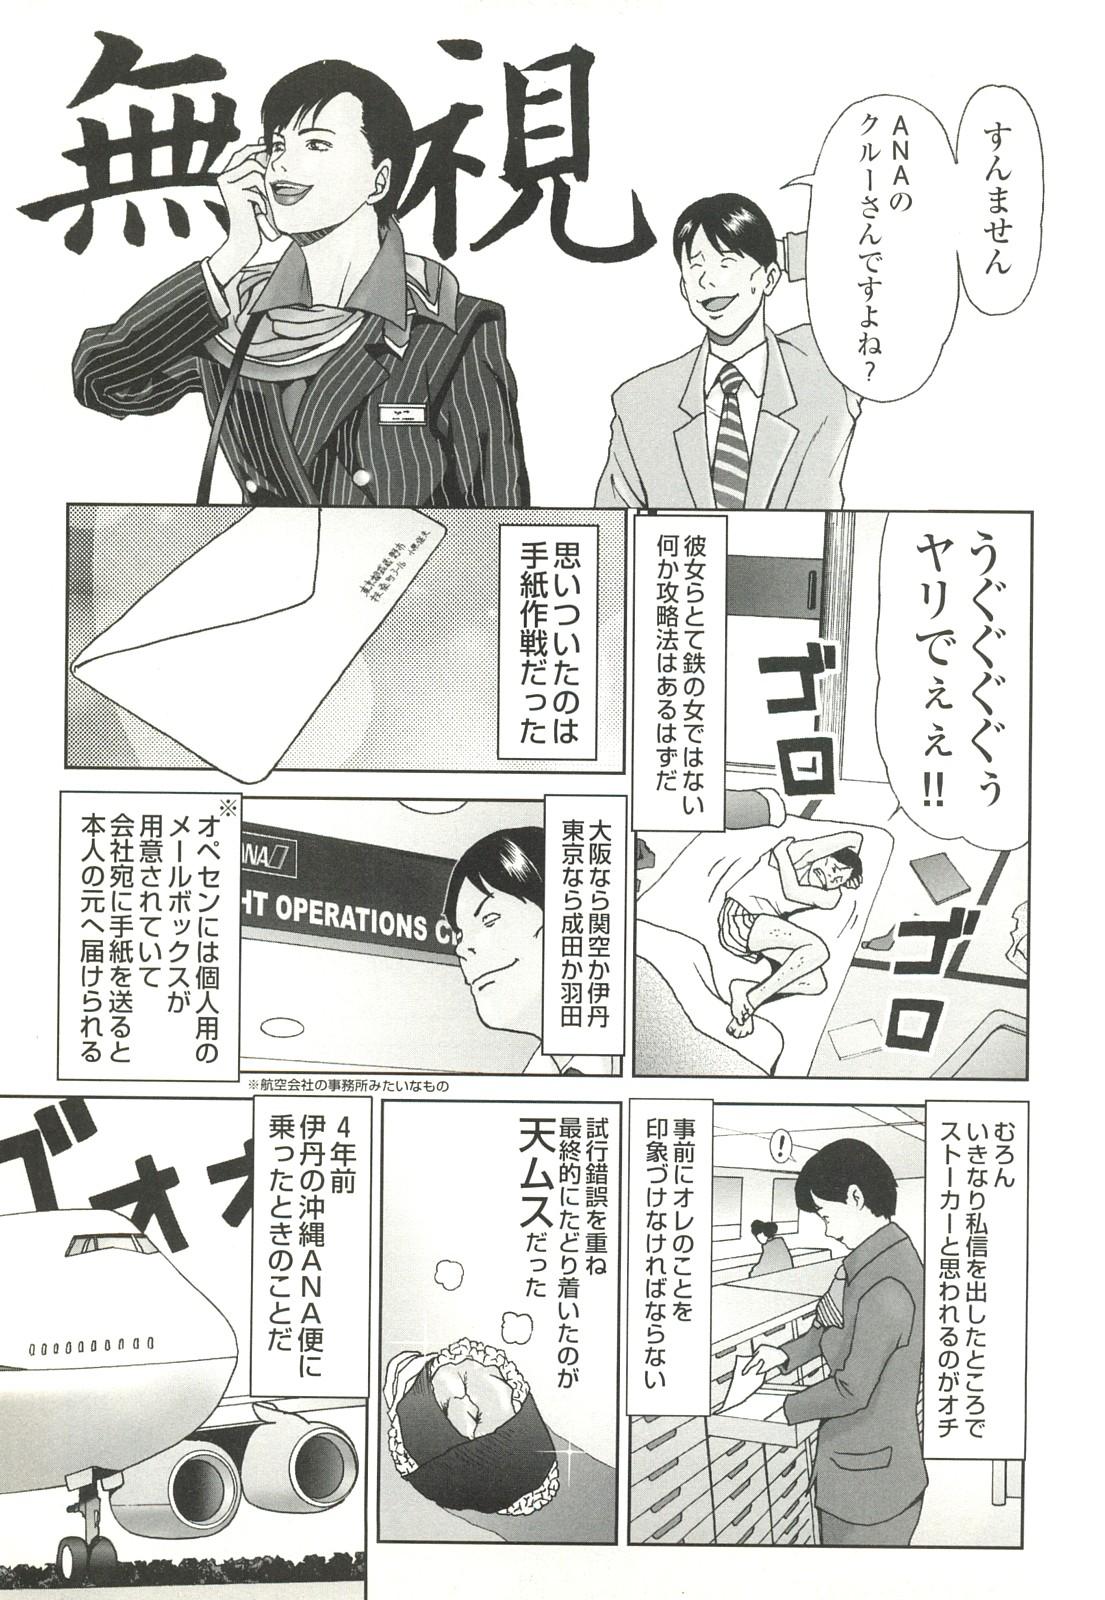 コミック裏モノJAPAN Vol.18 今井のりたつスペシャル号 256